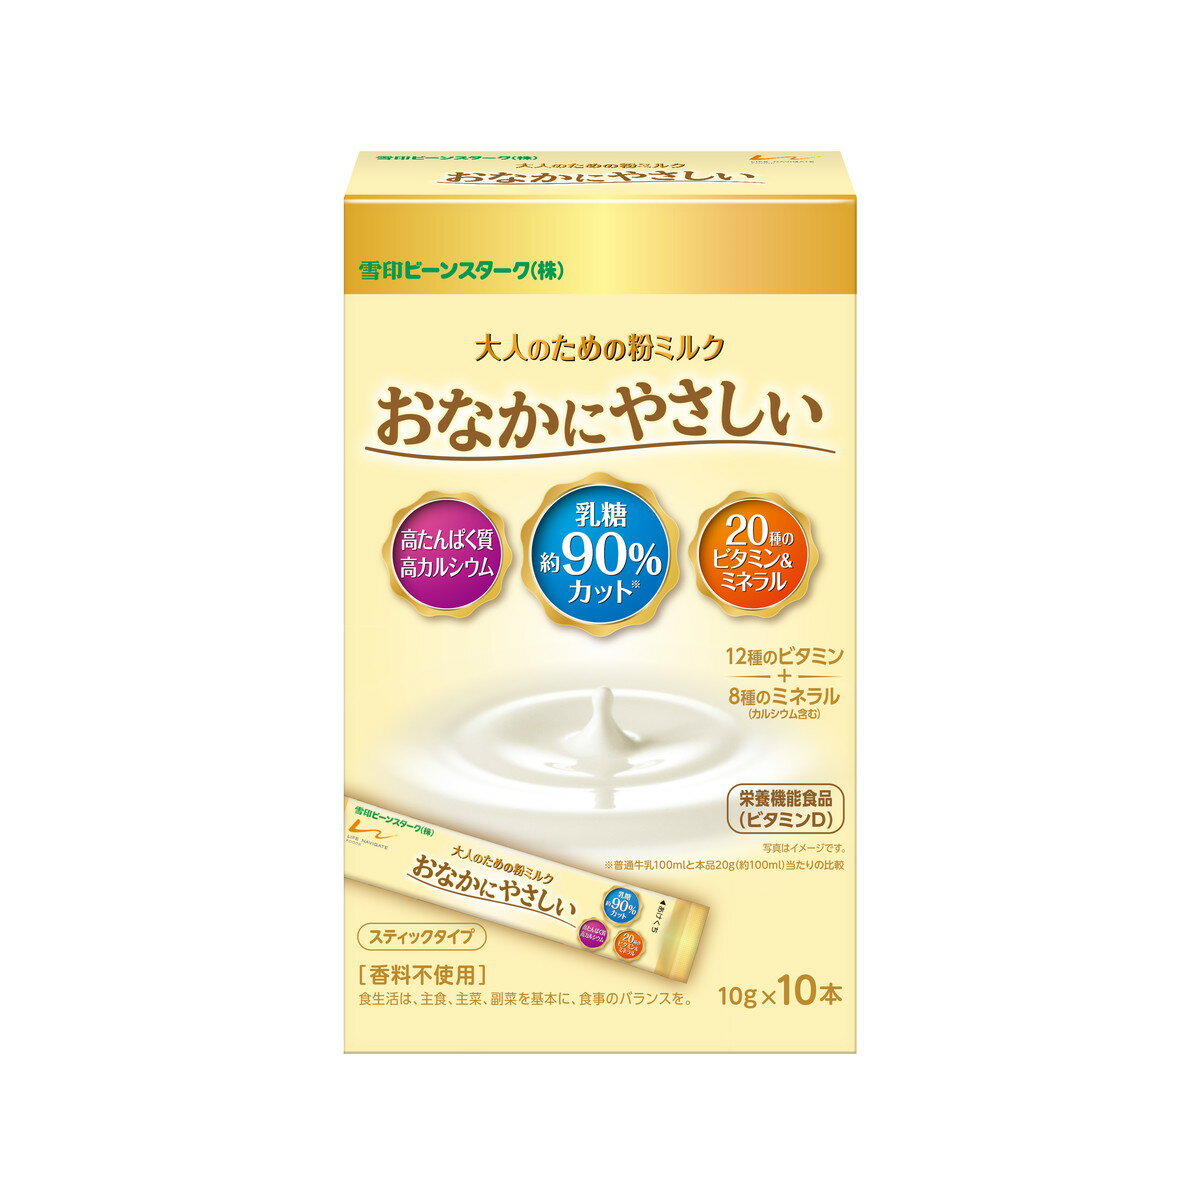 【送料込】 ビーンスターク 大人のための粉ミルク おなかにやさしい スティックタイプ 10本入 栄養機能食品 1個